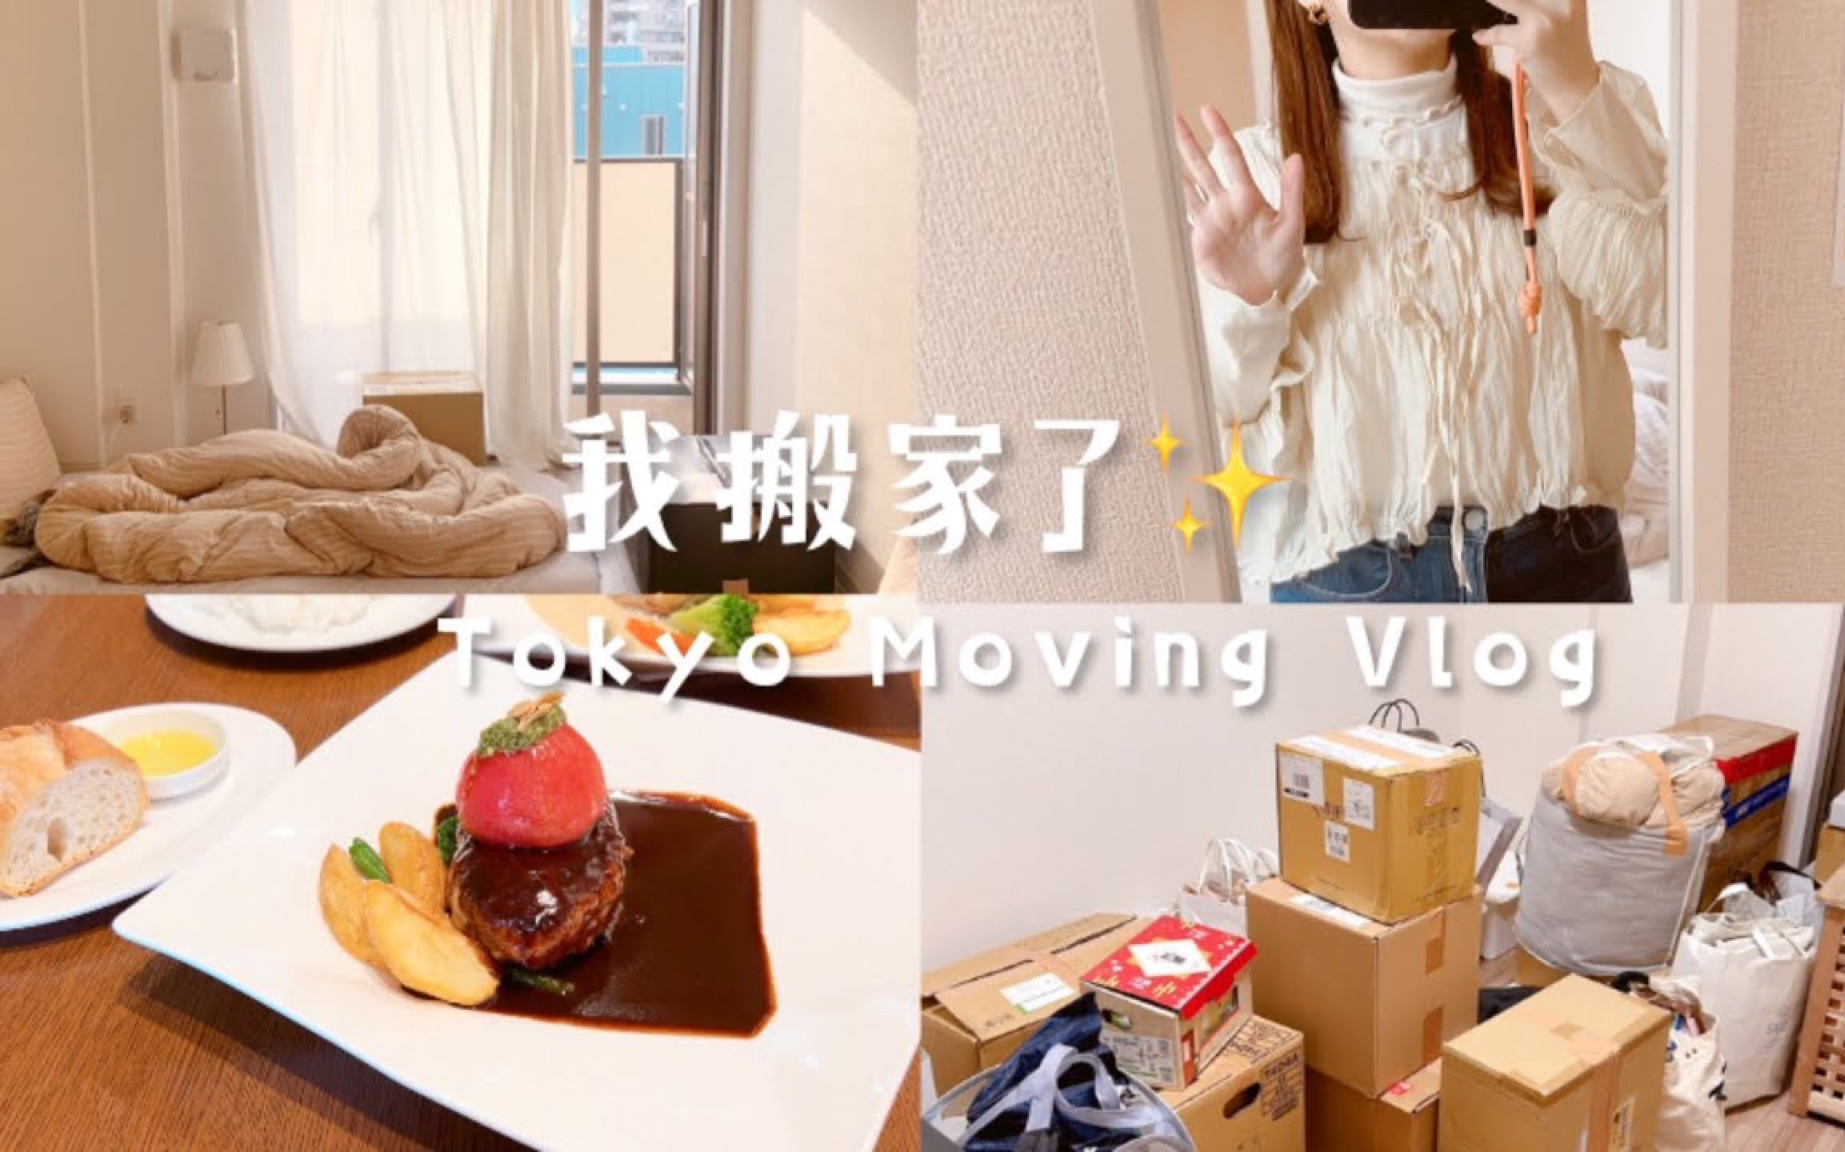 【Celia‘s vlog小日常】我搬家了 | 台湾女生日本生活 | 两人东京打包搬家 | 旧家解约+检查好严格 | 搬新家转入手续